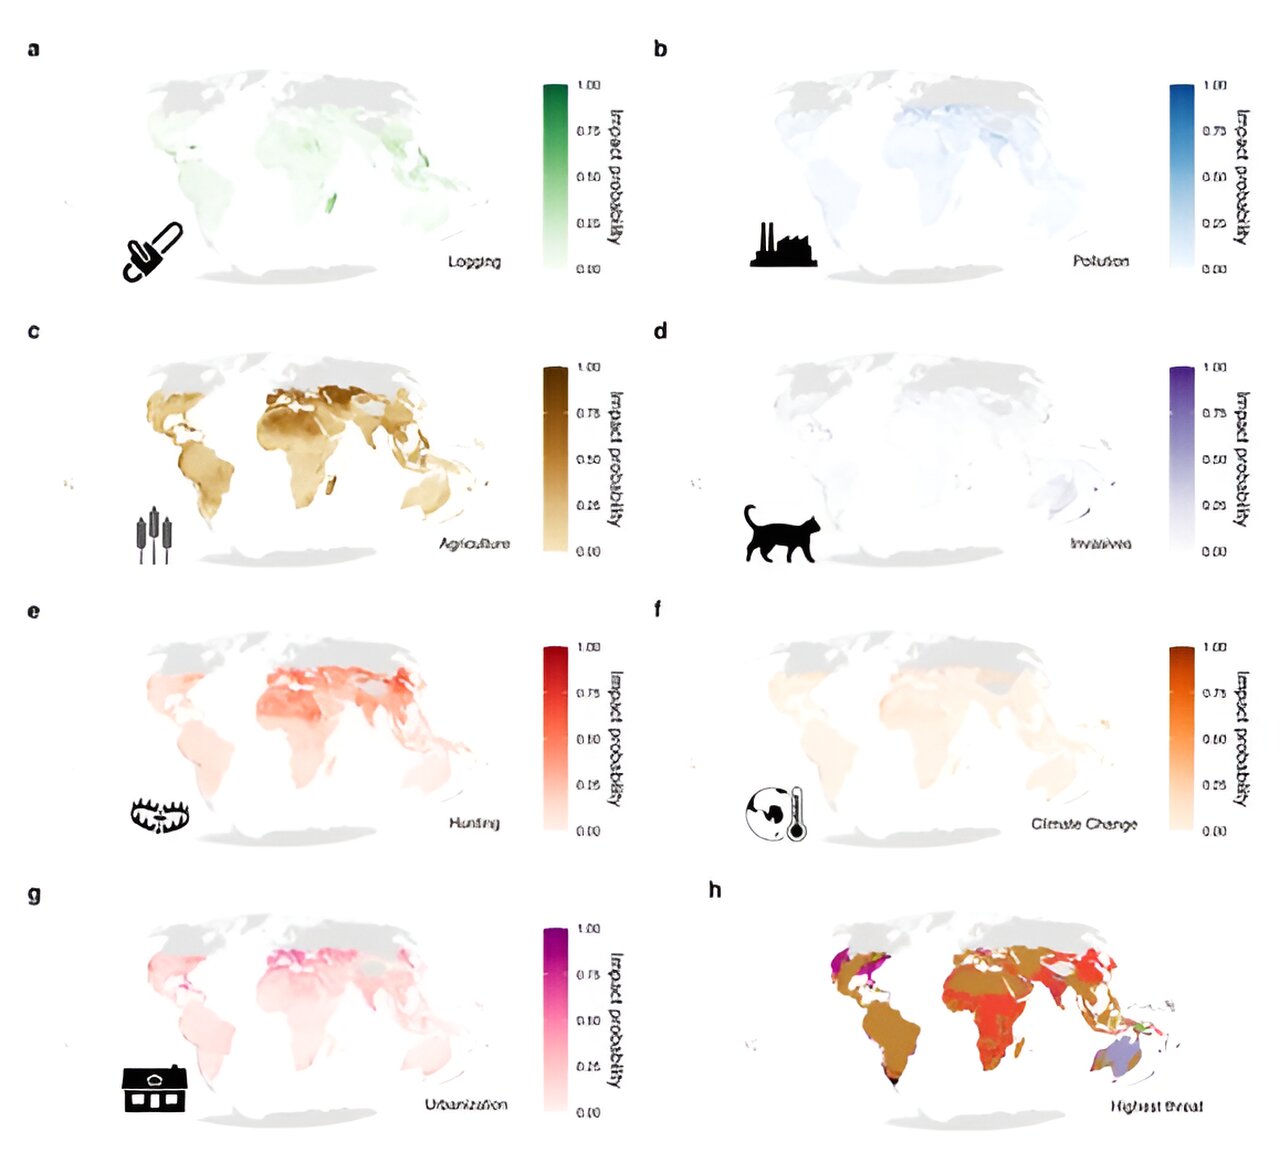 研究人员利用对比地图的力量揭示爬行动物面临的特定全球和区域性威胁